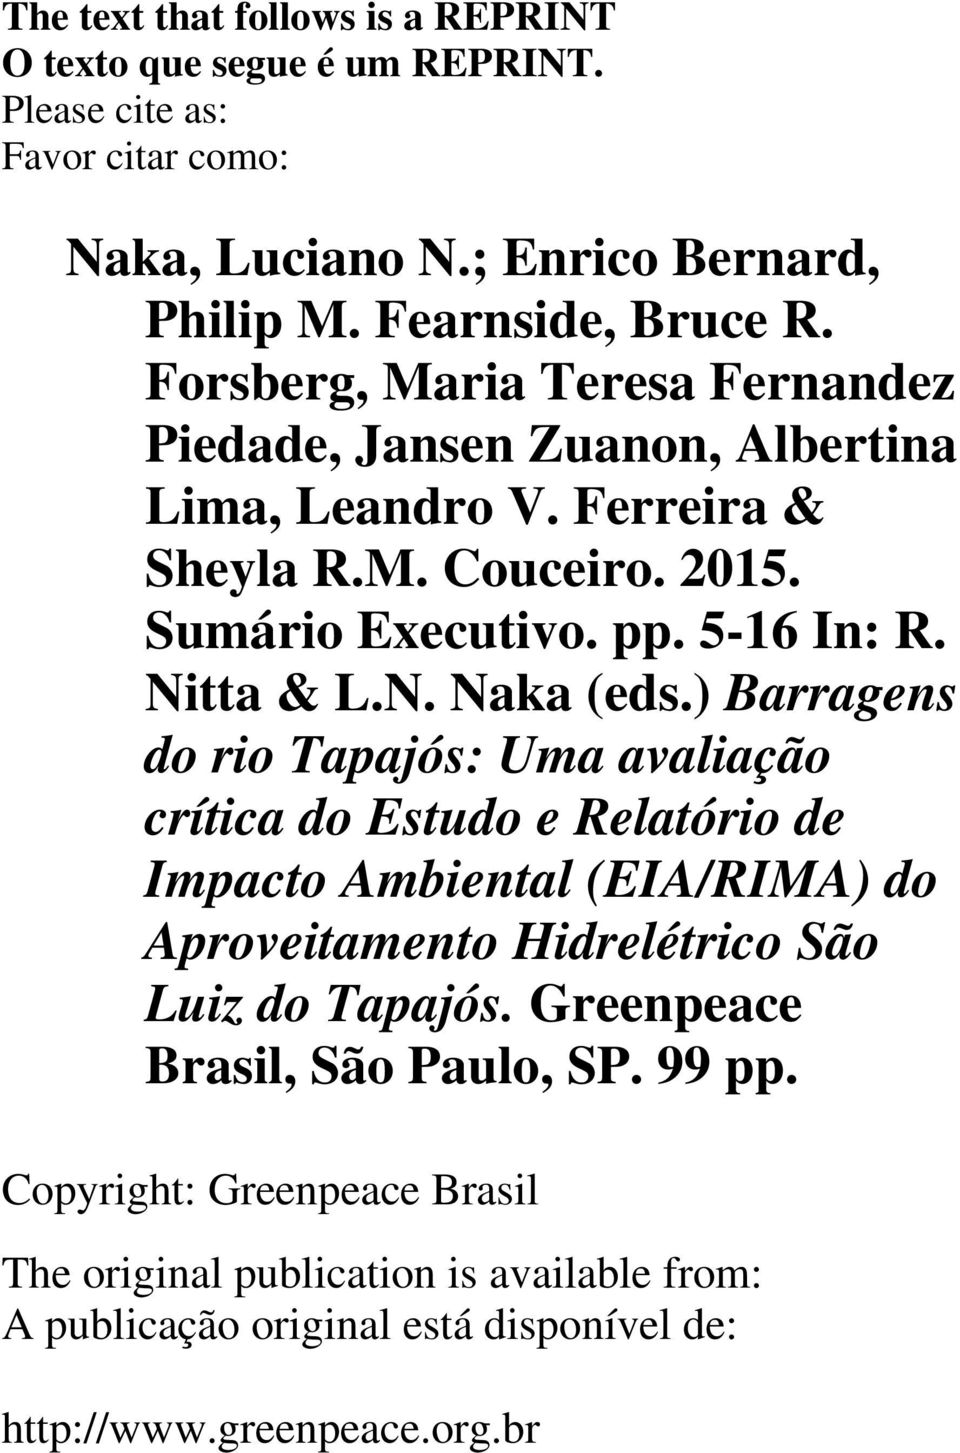 ) Barragens do rio Tapajós: Uma avaliação crítica do Estudo e Relatório de Impacto Ambiental (EIA/RIMA) do Aproveitamento Hidrelétrico São Luiz do Tapajós.